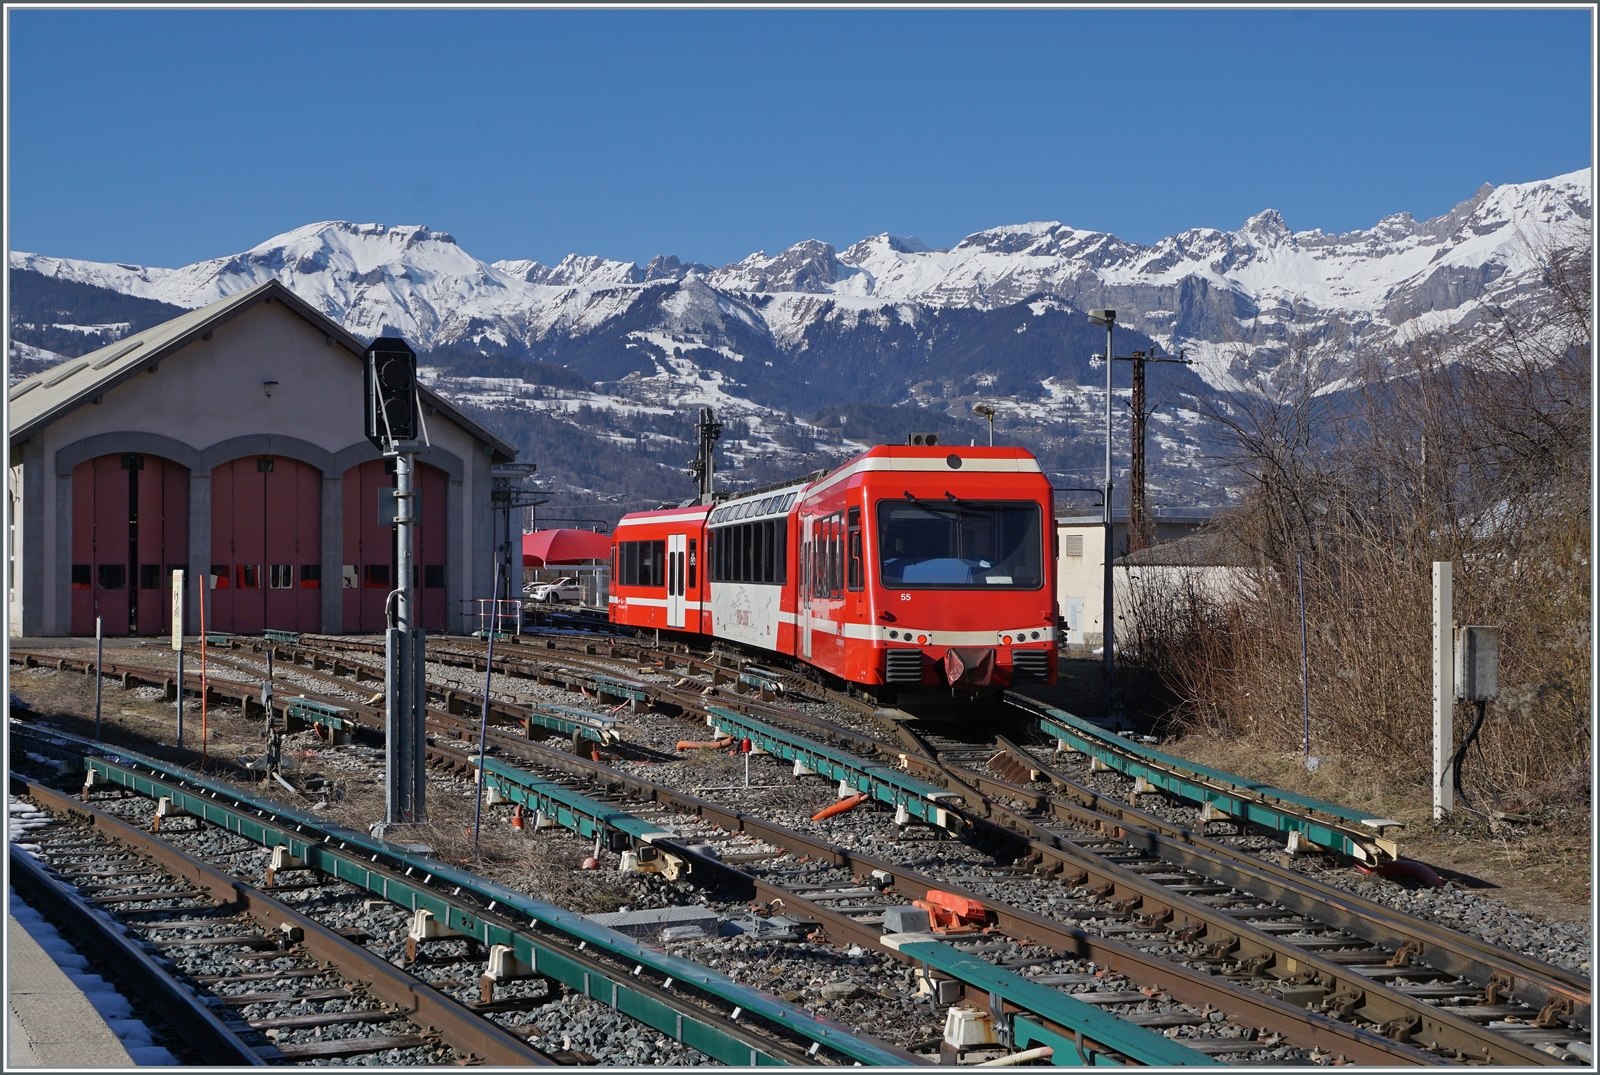 Nachdem in Saint Germain-Les-Bains-le-Fayet der SNCF Z 800 803/804 als TER nach Vallorcine bereitgestellt wurde, war es nun am SNCF Z 850 055 der von Vallorcine angekommen ist, sich ins Dépôt zu begeben. Und dabei kann der Triebzug auch recht gut fotografiert werden.

14 Feb. 2023